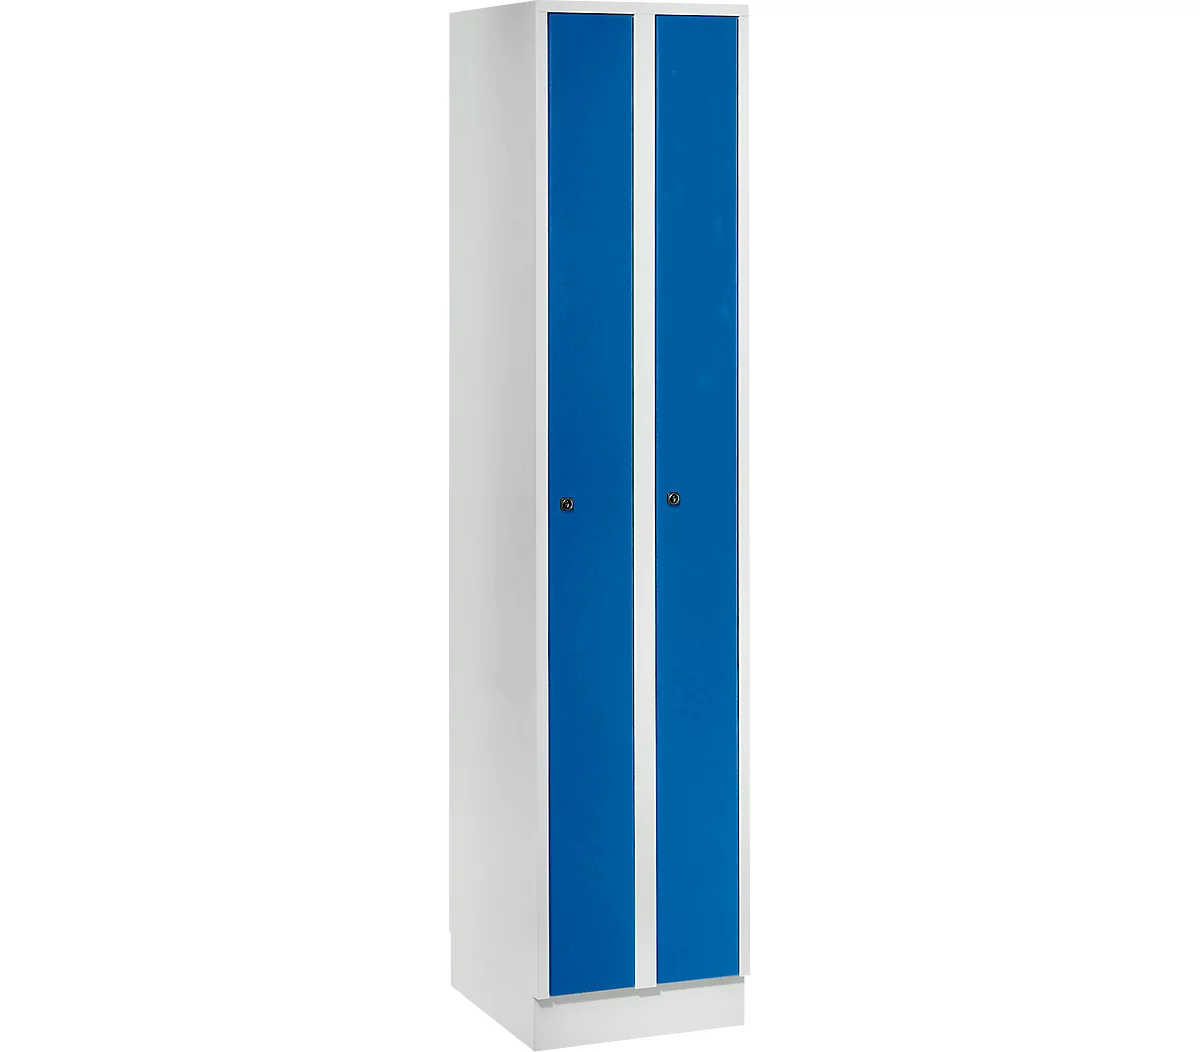 Taquilla que ahorra espacio, anchura del compartimento 200 mm, con cerradura, 2 compartimentos, azul genciana